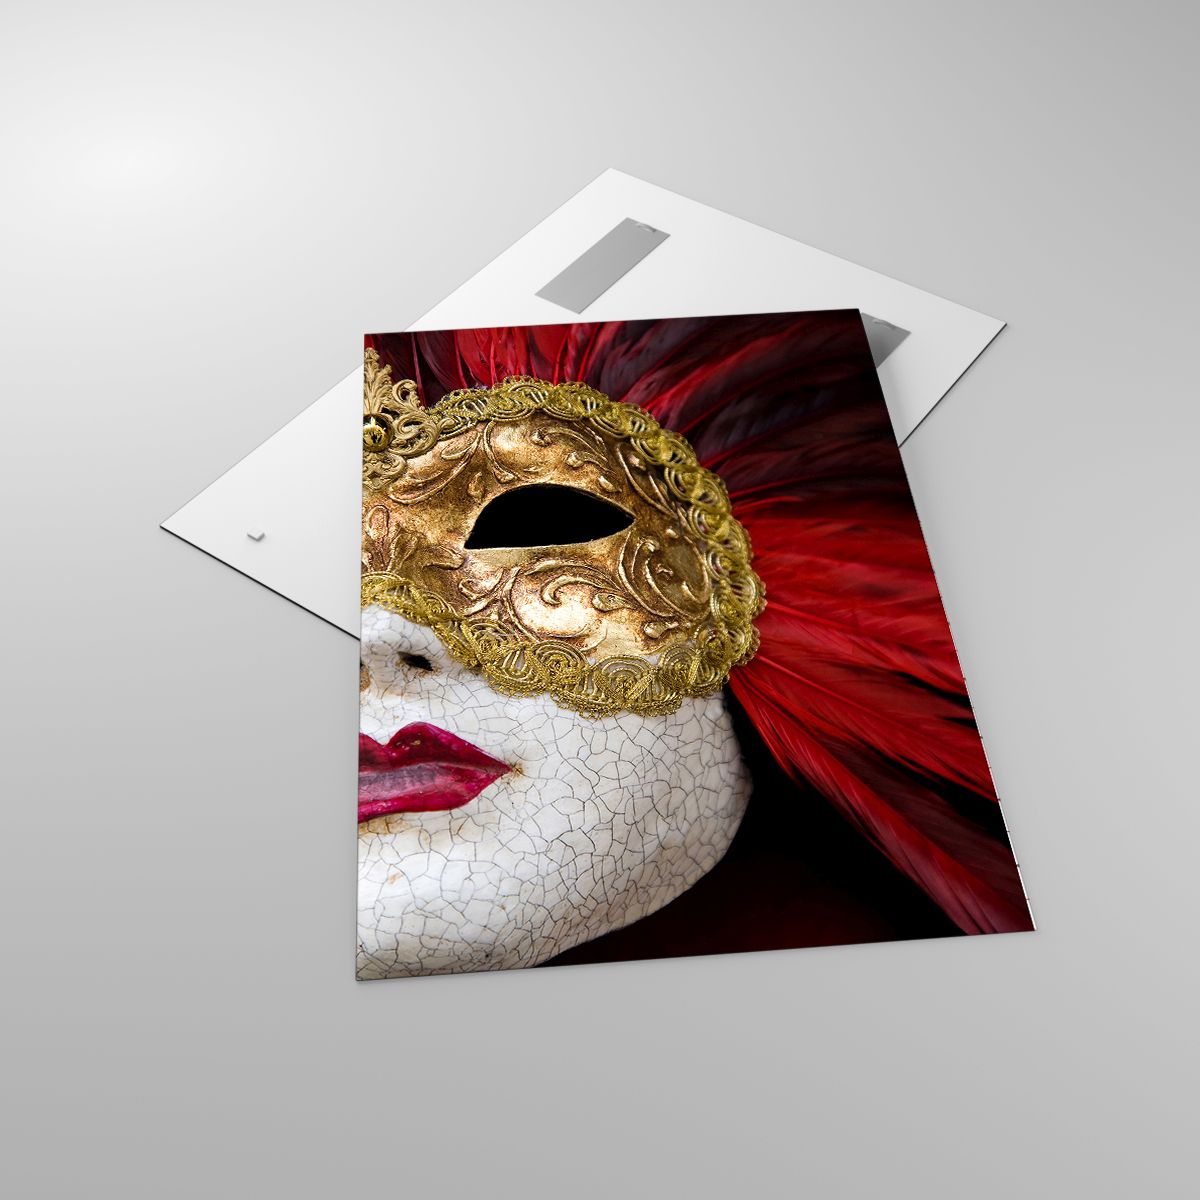 Glasbild Venezianische Maske, Glasbild Kunst, Glasbild Venedig, Glasbild Karneval, Glasbild Italien